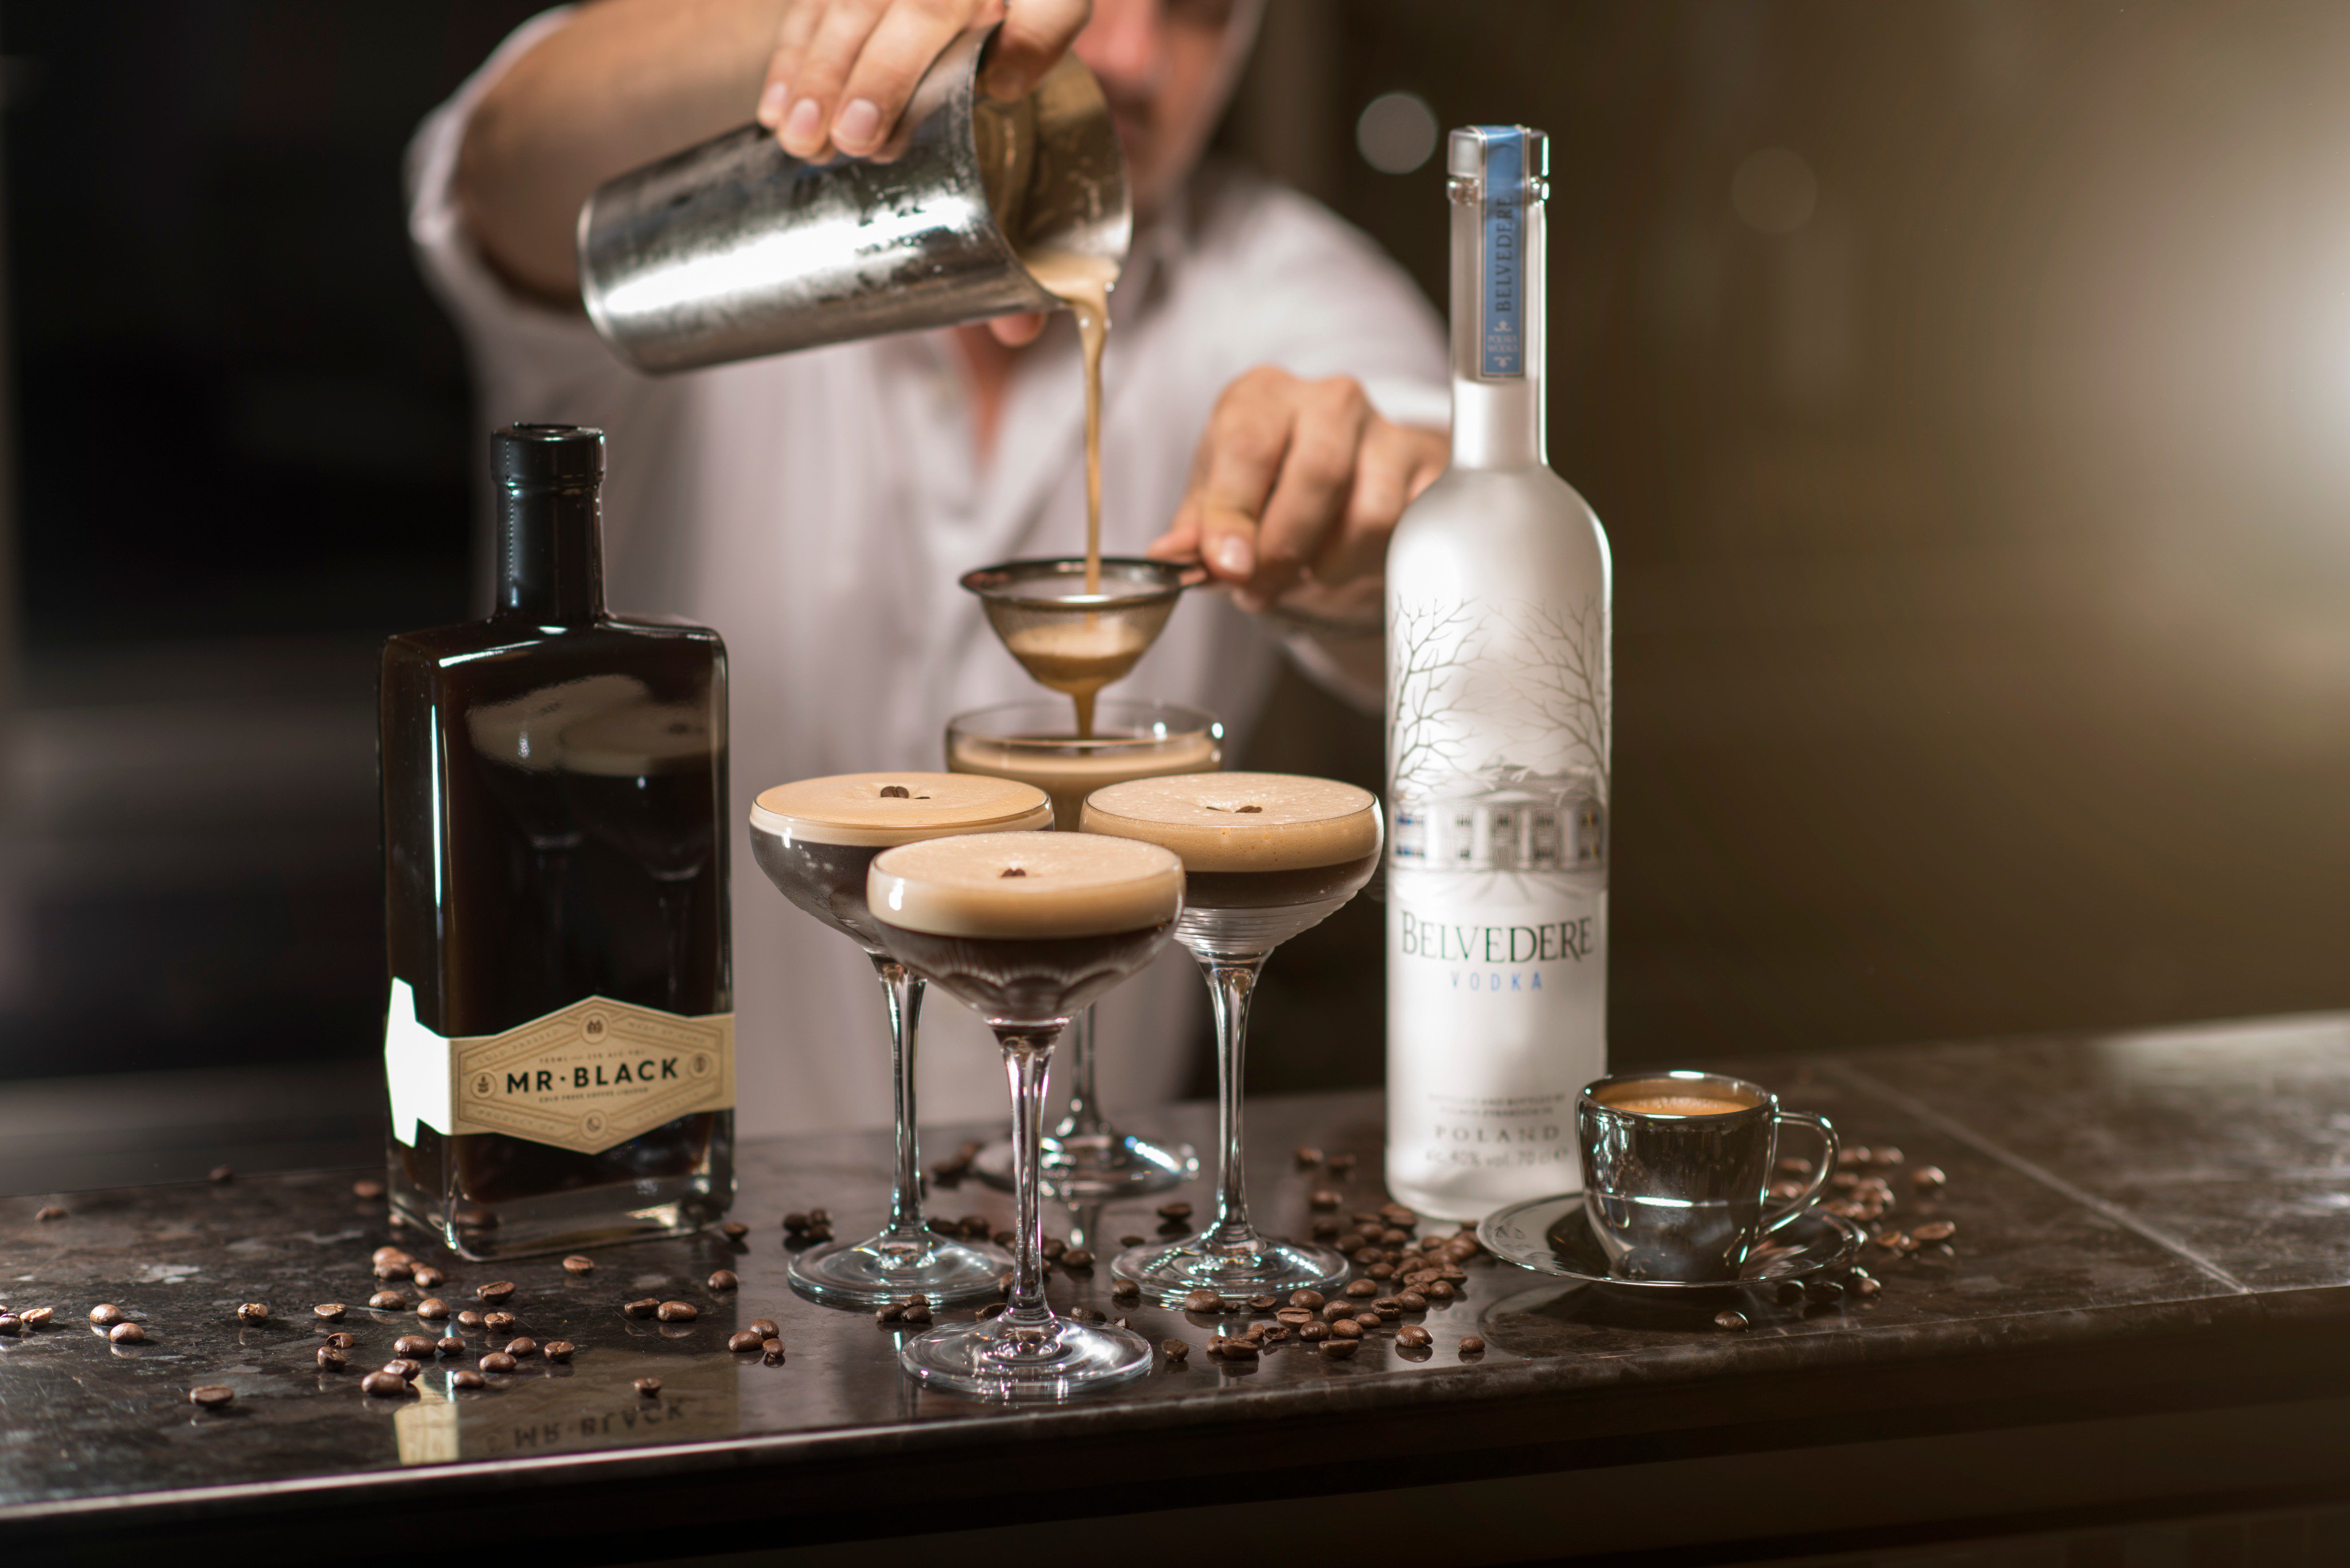 Belvedere Vodka, Espresso Martini Recipe